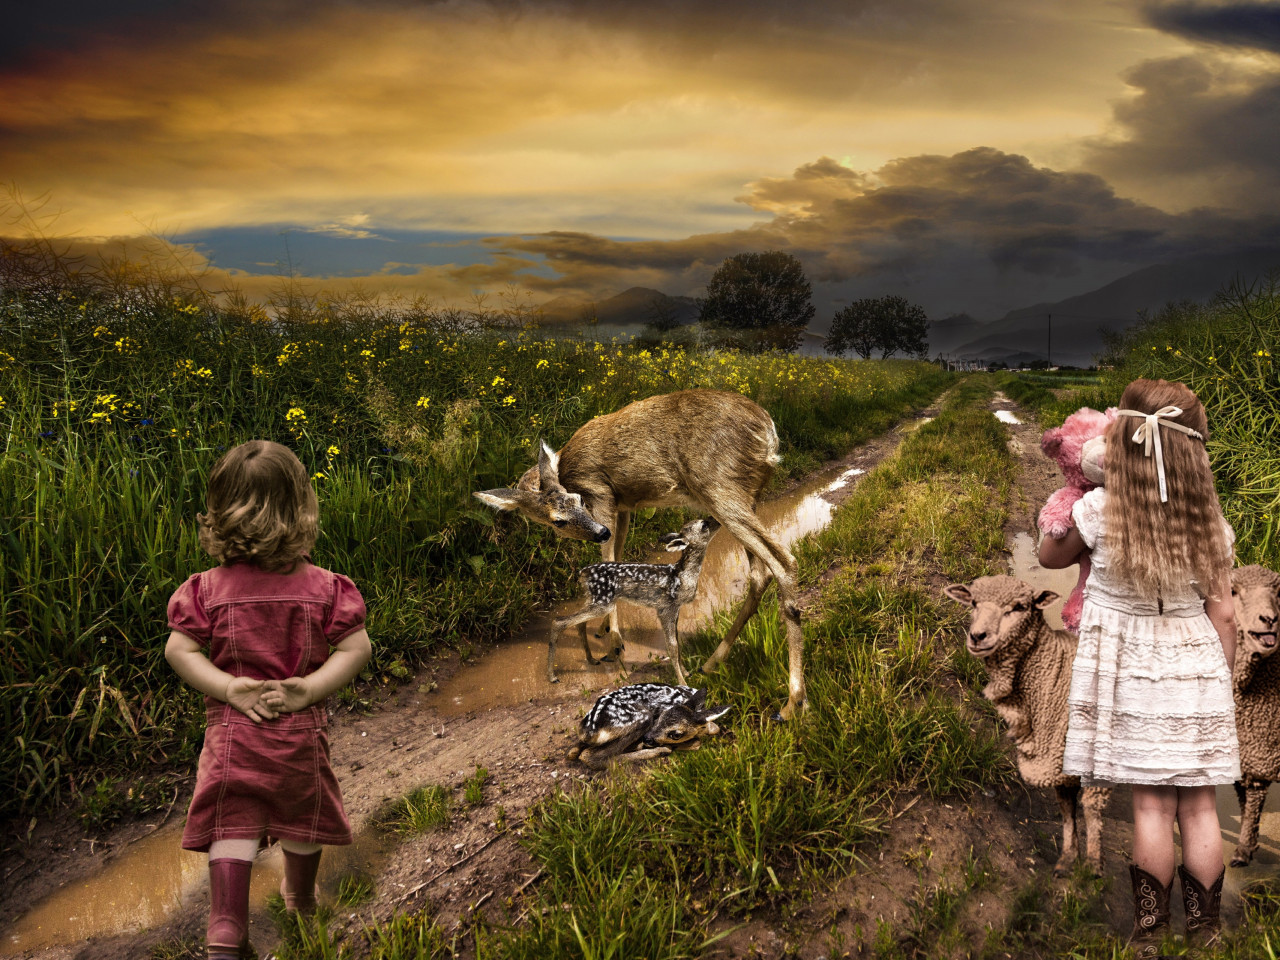 Children, sheep and deer wallpaper 1280x960